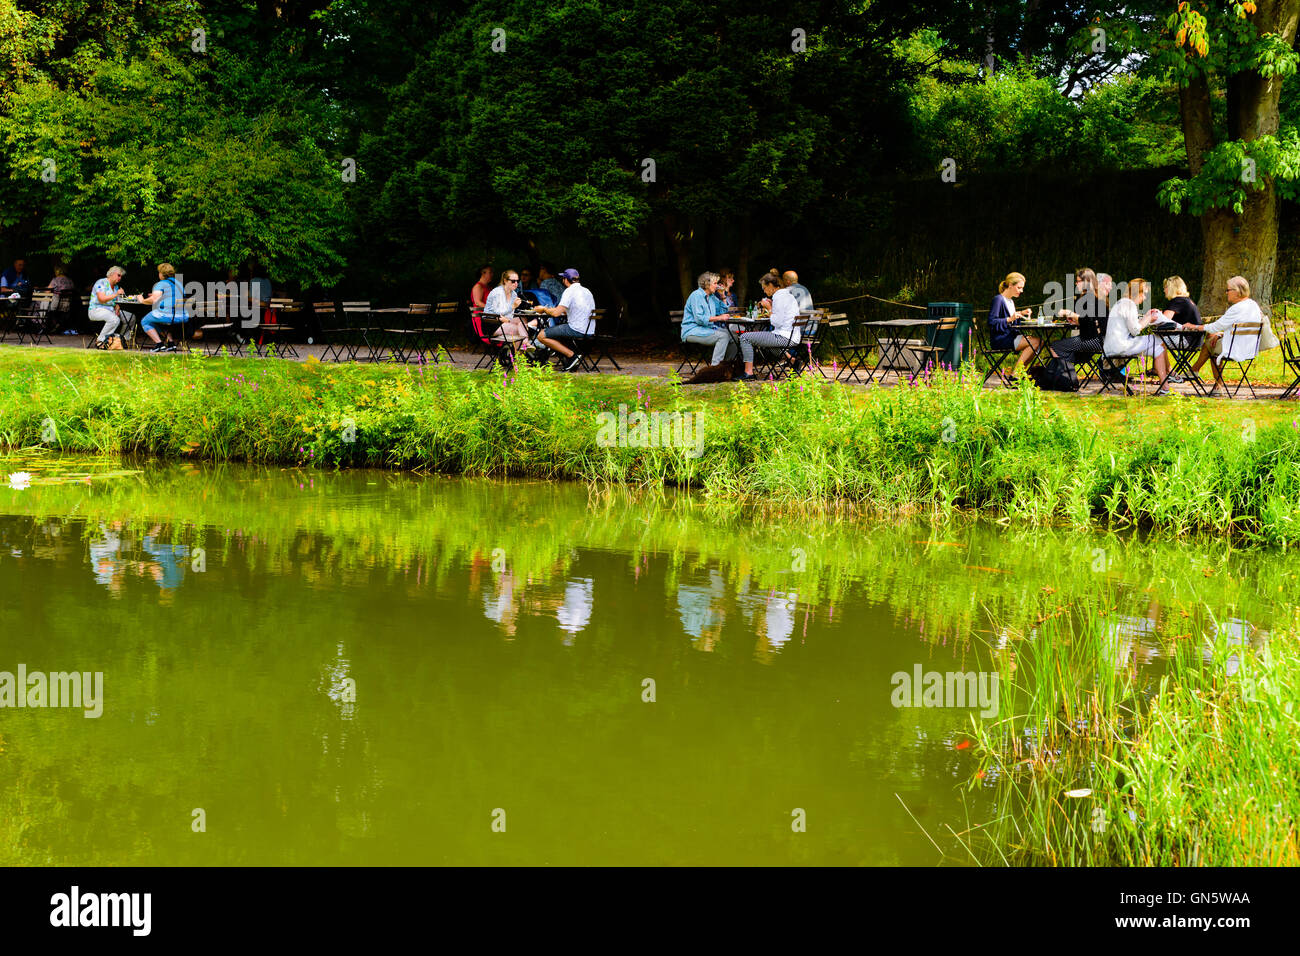 Lund, Svezia - 24 agosto 2016: Persone aventi il pranzo accanto ad un laghetto di acqua ho il pubblico del giardino botanico. Goldfish nuotare nel wate Foto Stock